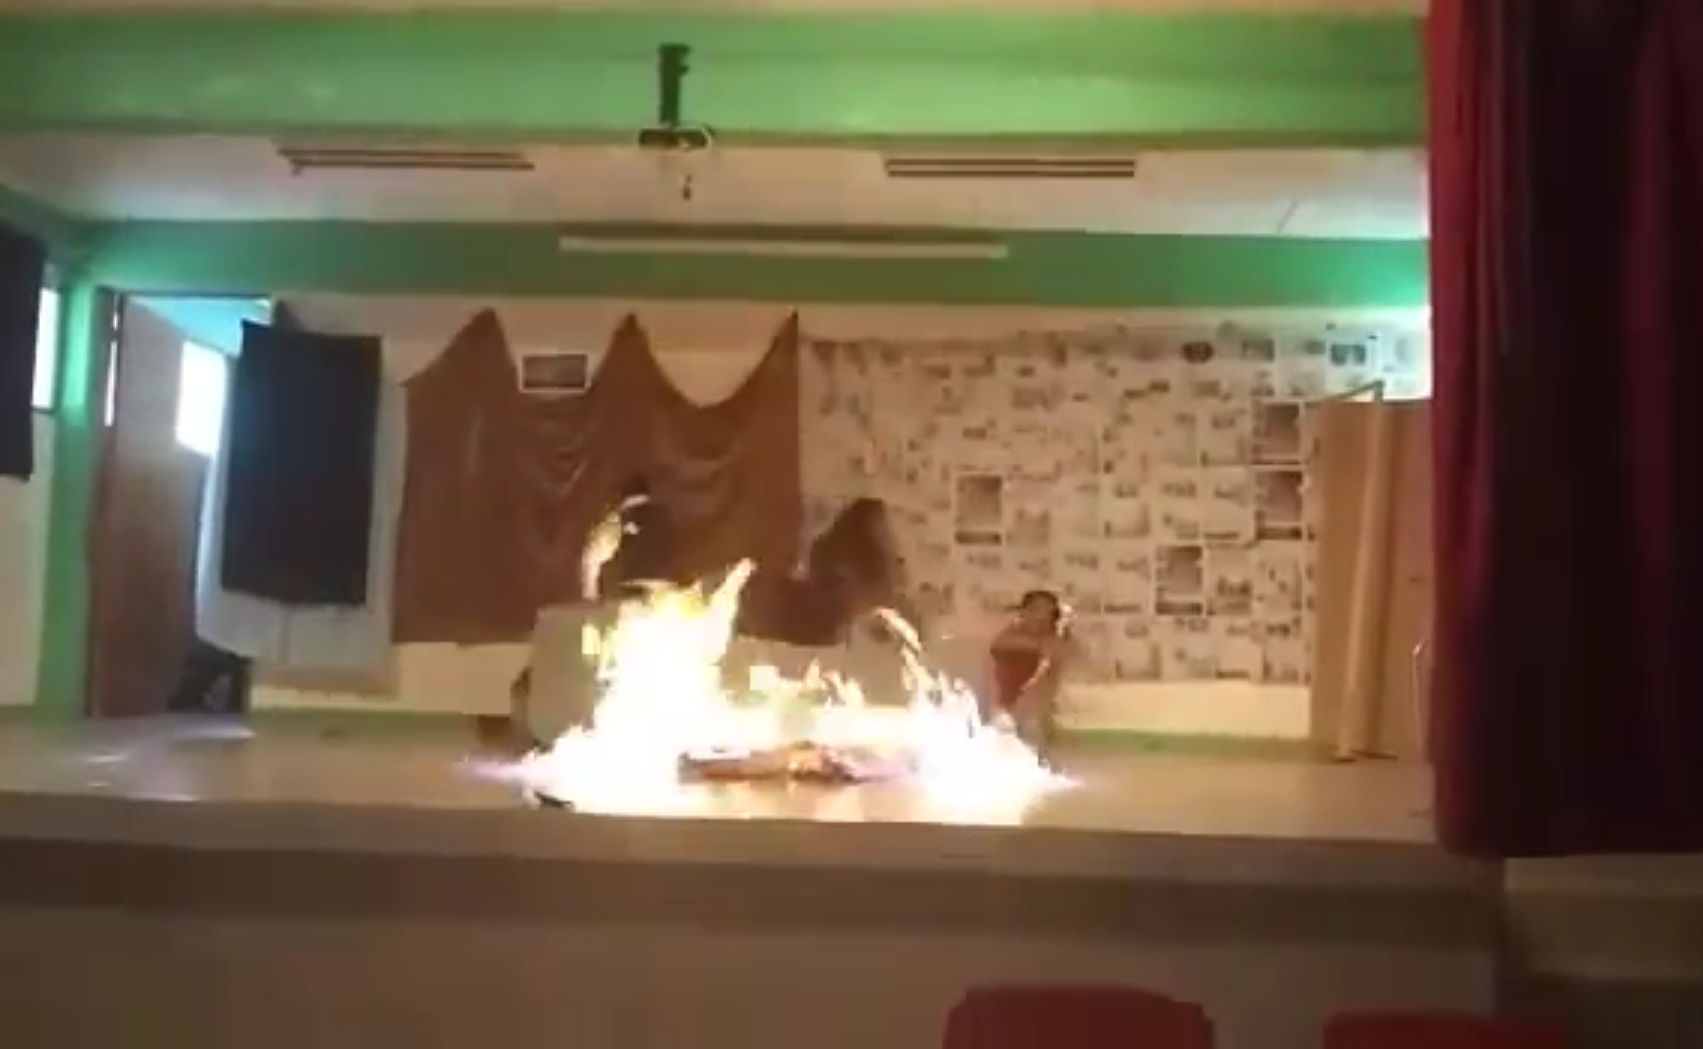 Dos estudiantes se queman en obra de teatro